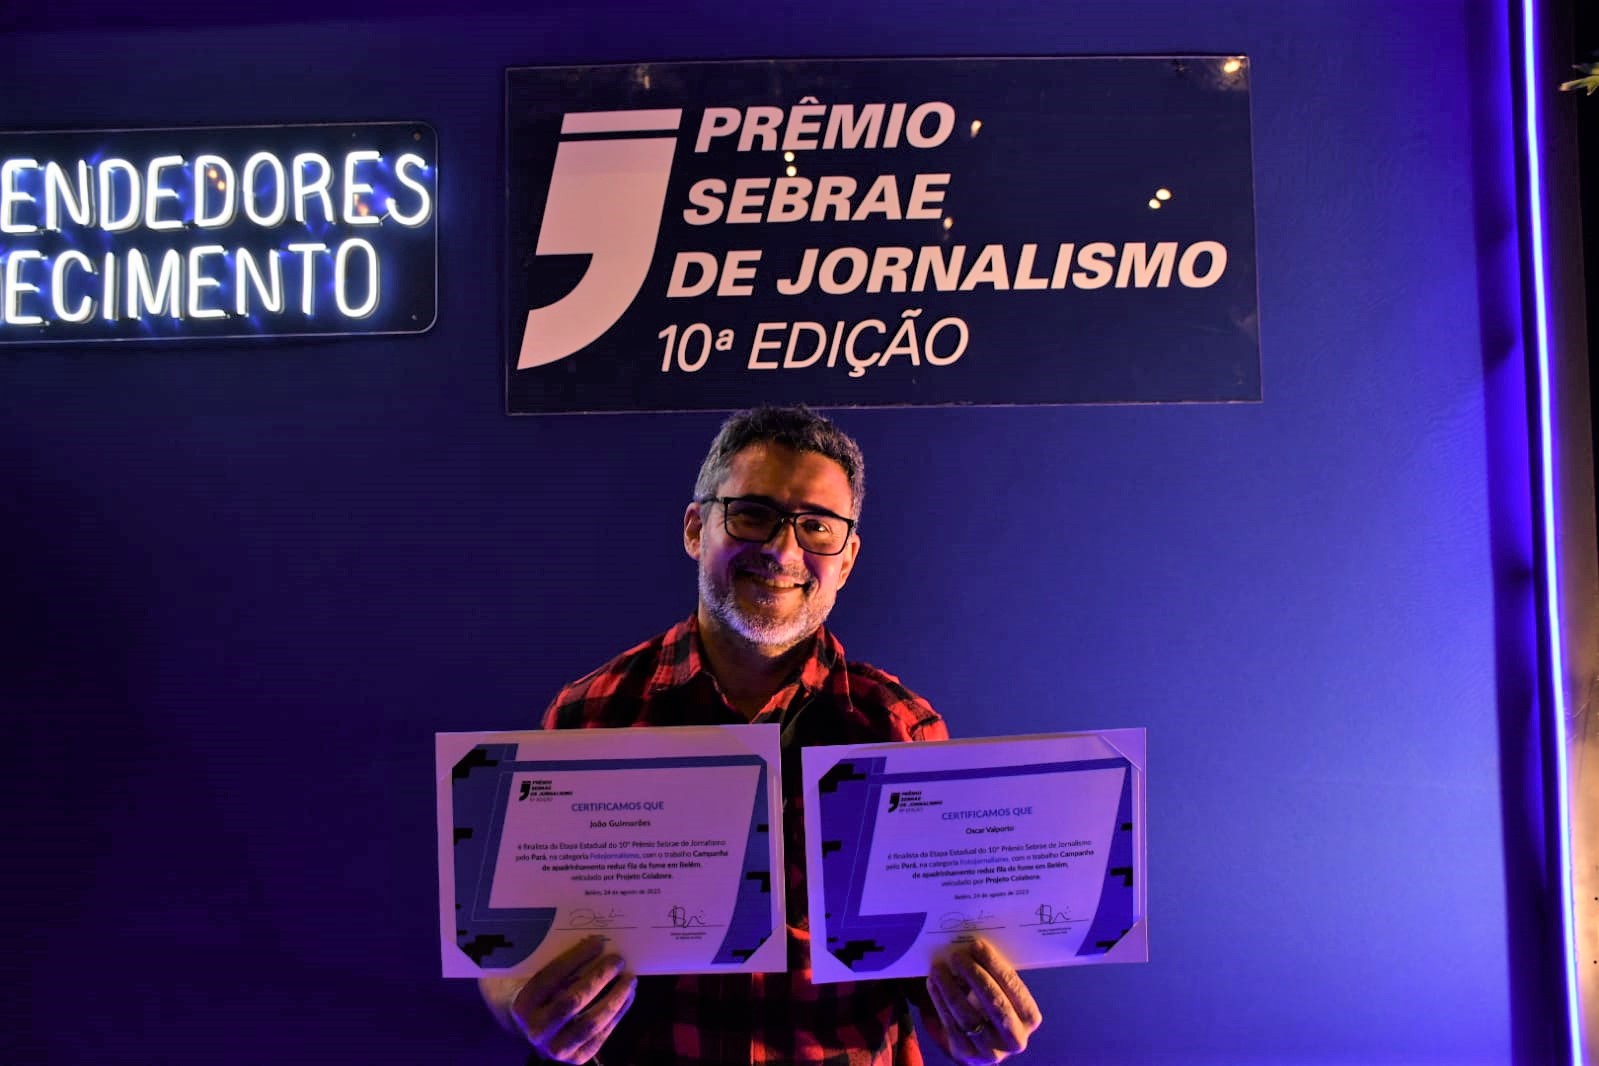 O fotojornalista João Paulo Guimarães com seu diploma no Prêmio Sebrae: sensibilidade para retratar beneficiados por ações de ONG (Foto: Divulgação)